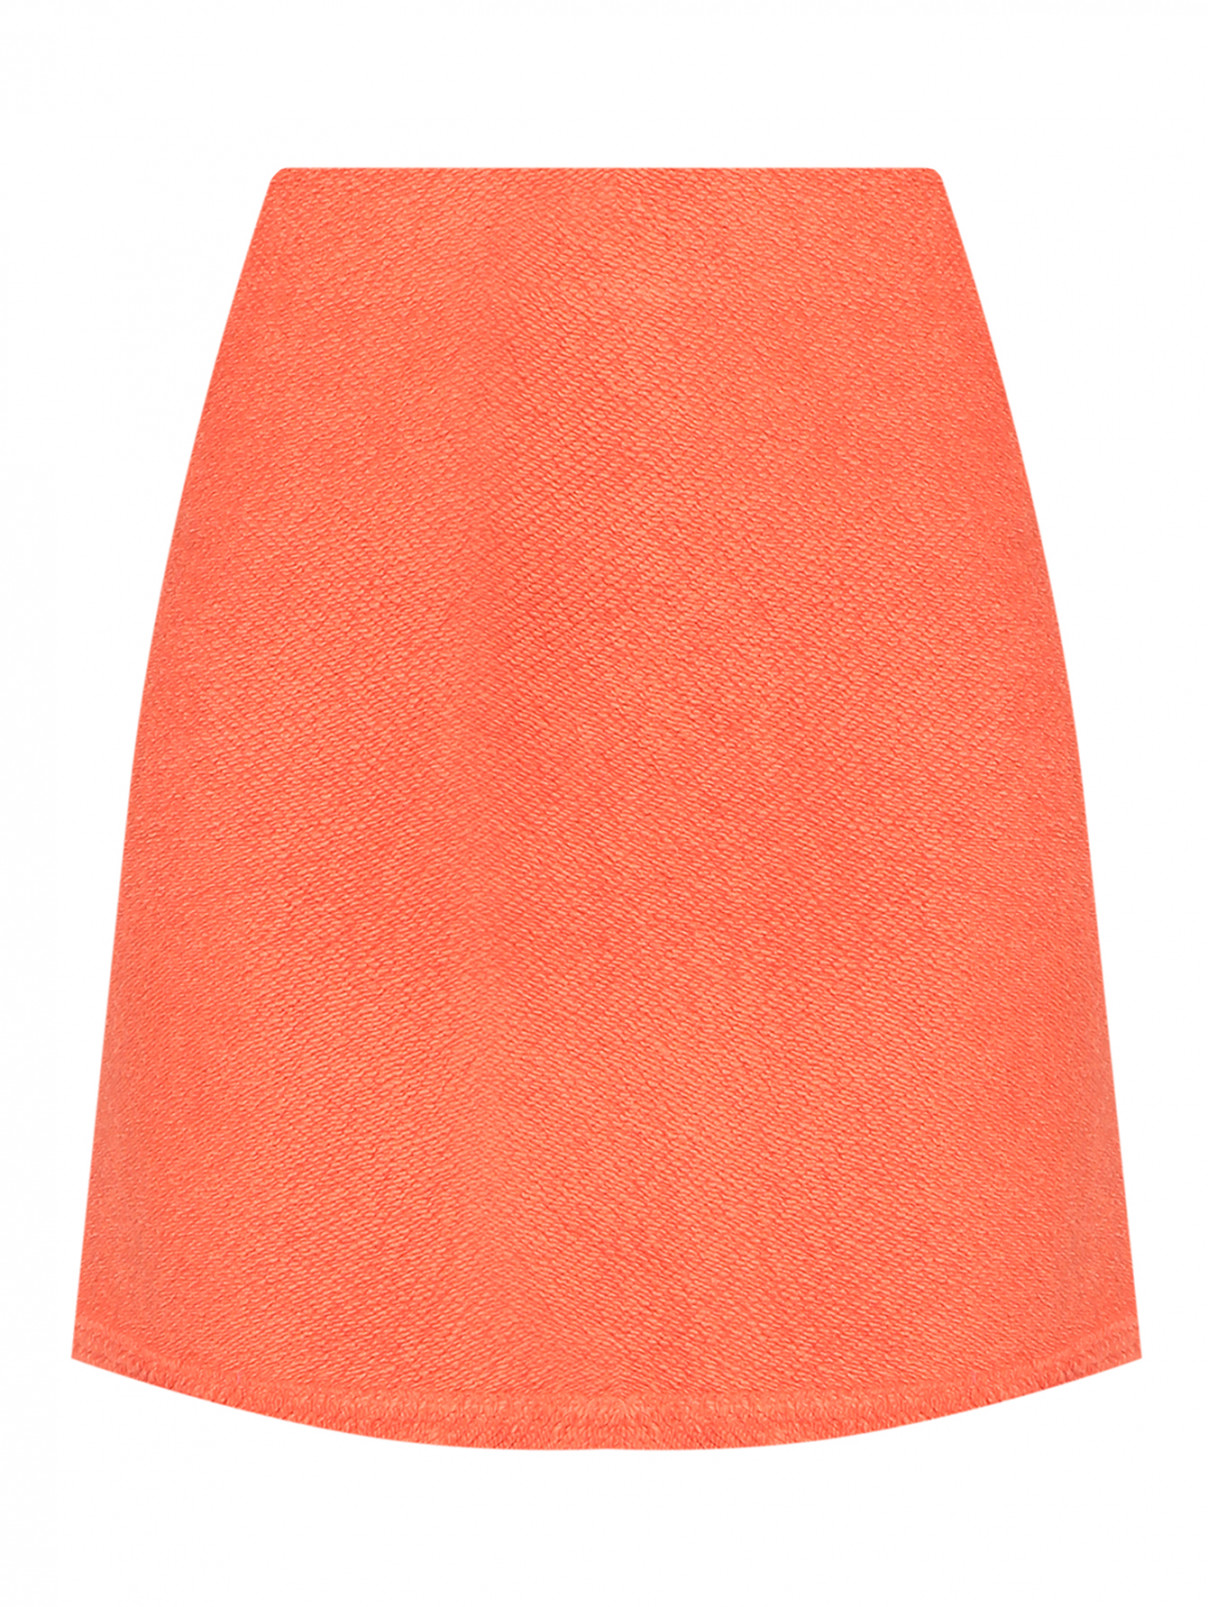 Мини юбка-трапеция Dorothee Schumacher  –  Общий вид  – Цвет:  Оранжевый